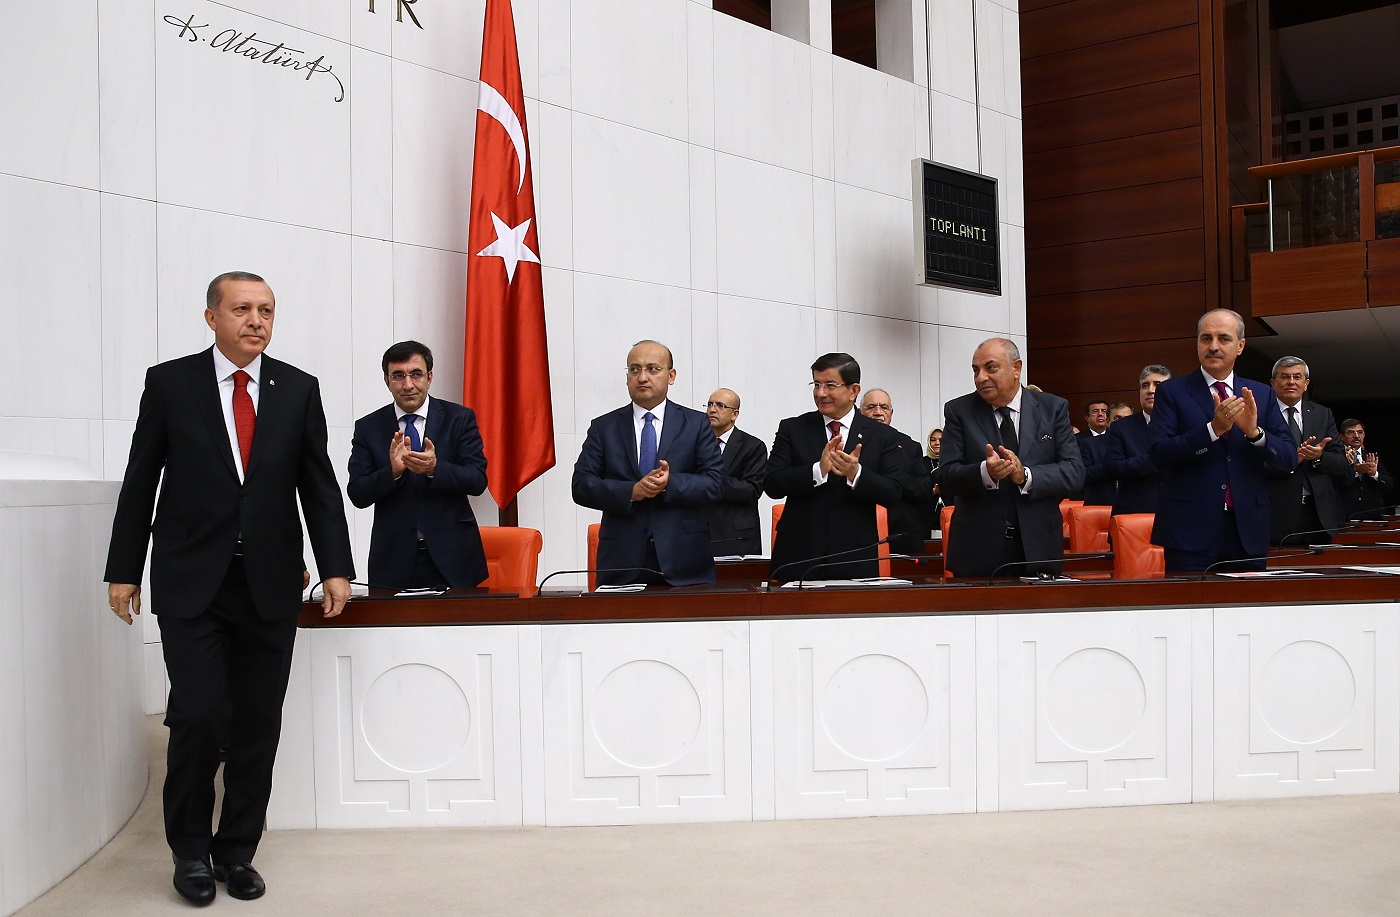   تركيا تحت حكم حزب العدالة والتنمية:  من سياسة الحزب المهيمن إلى نظام الحزب المهيمن